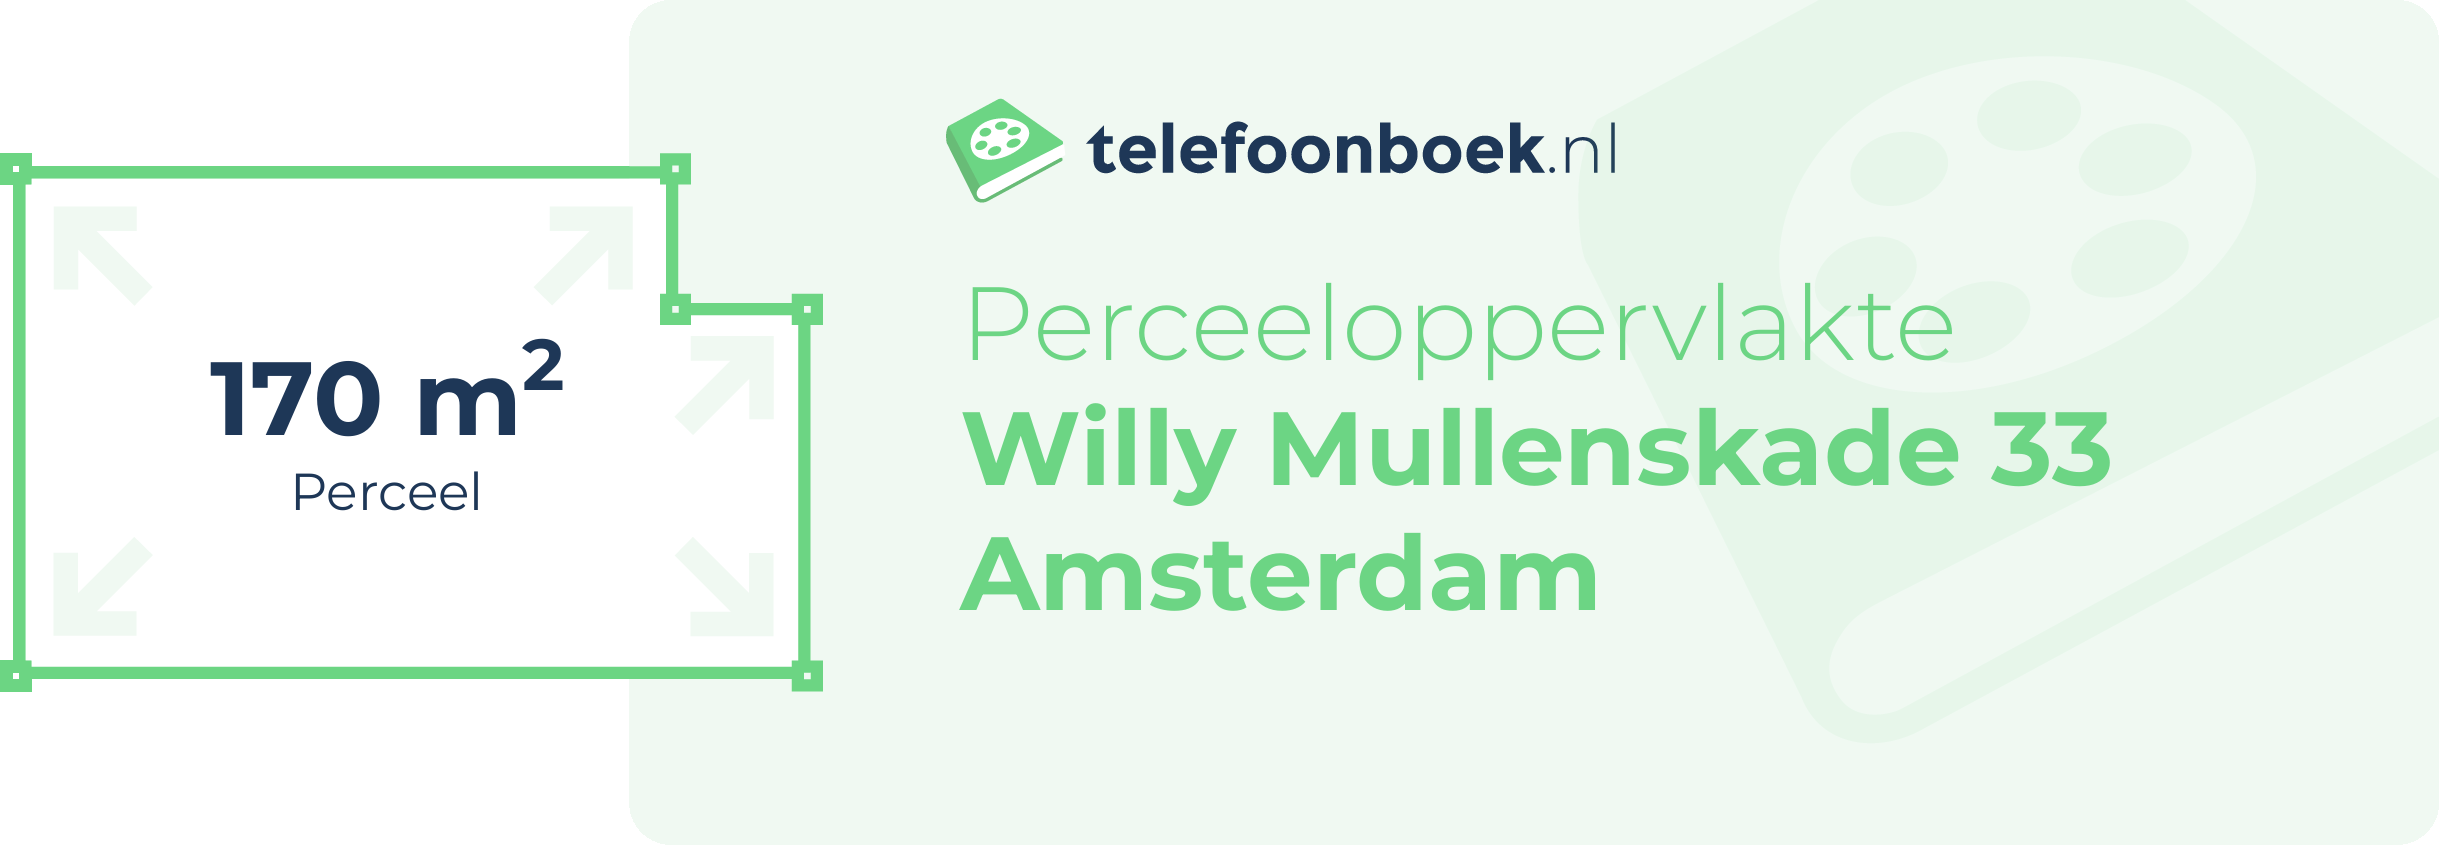 Perceeloppervlakte Willy Mullenskade 33 Amsterdam